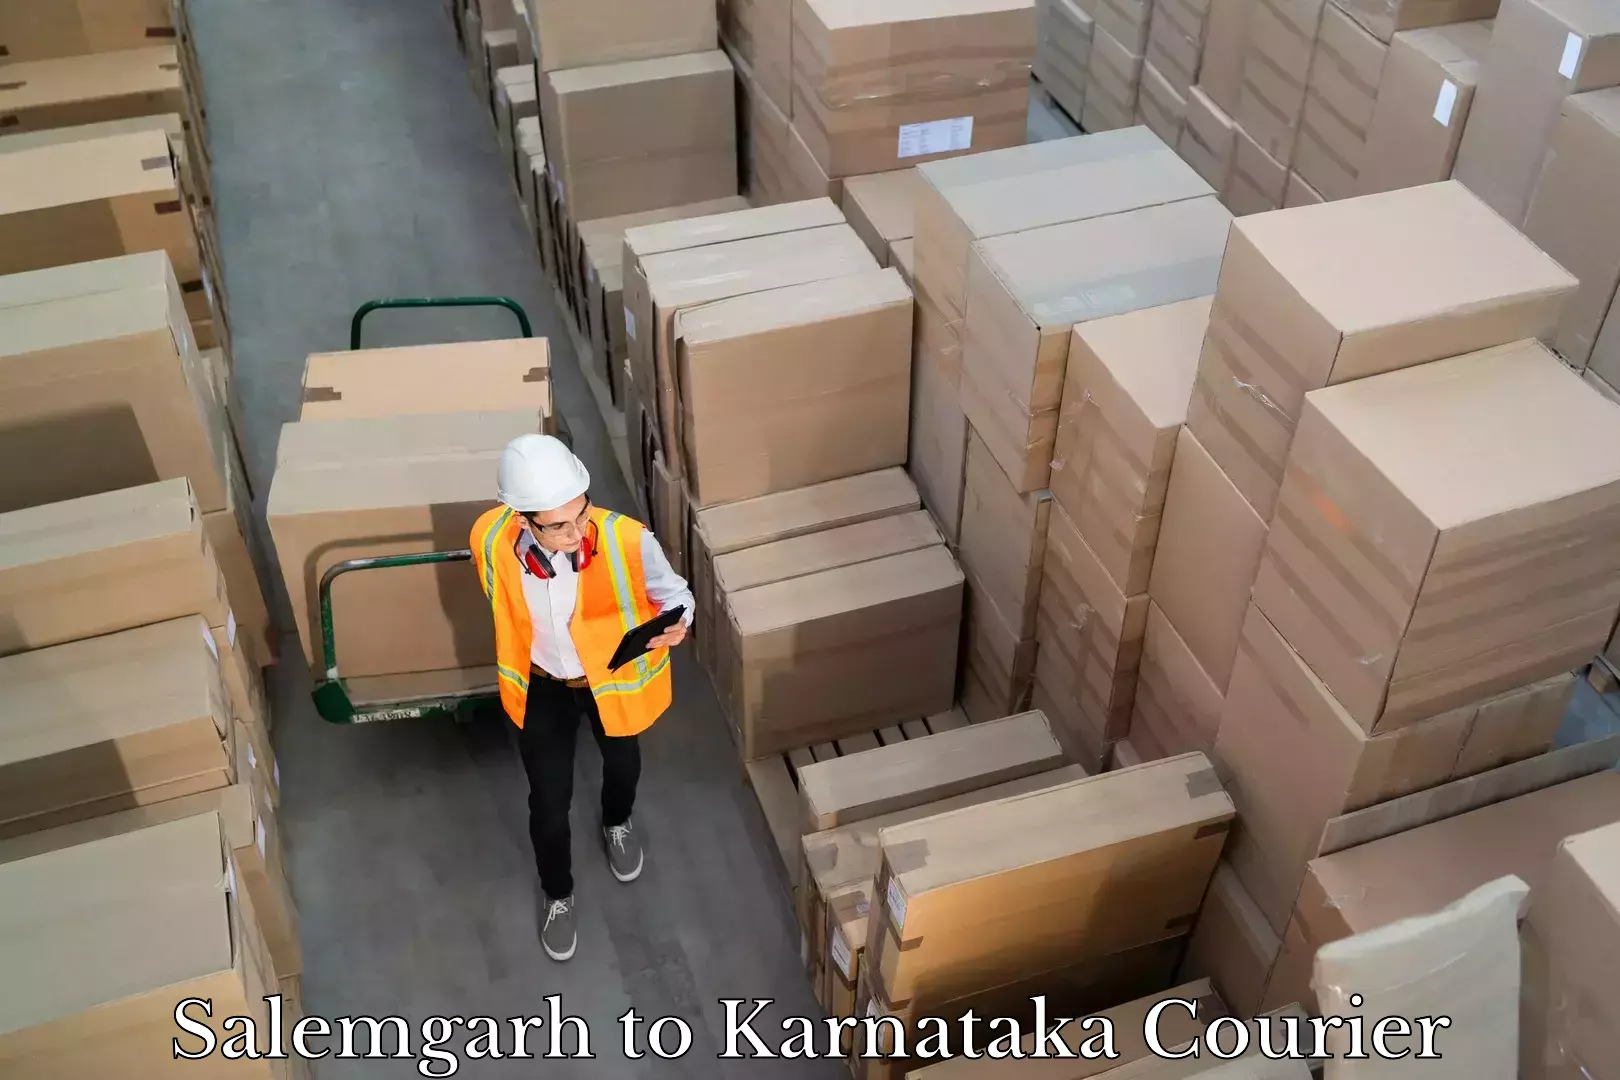 Logistics service provider Salemgarh to Karnataka